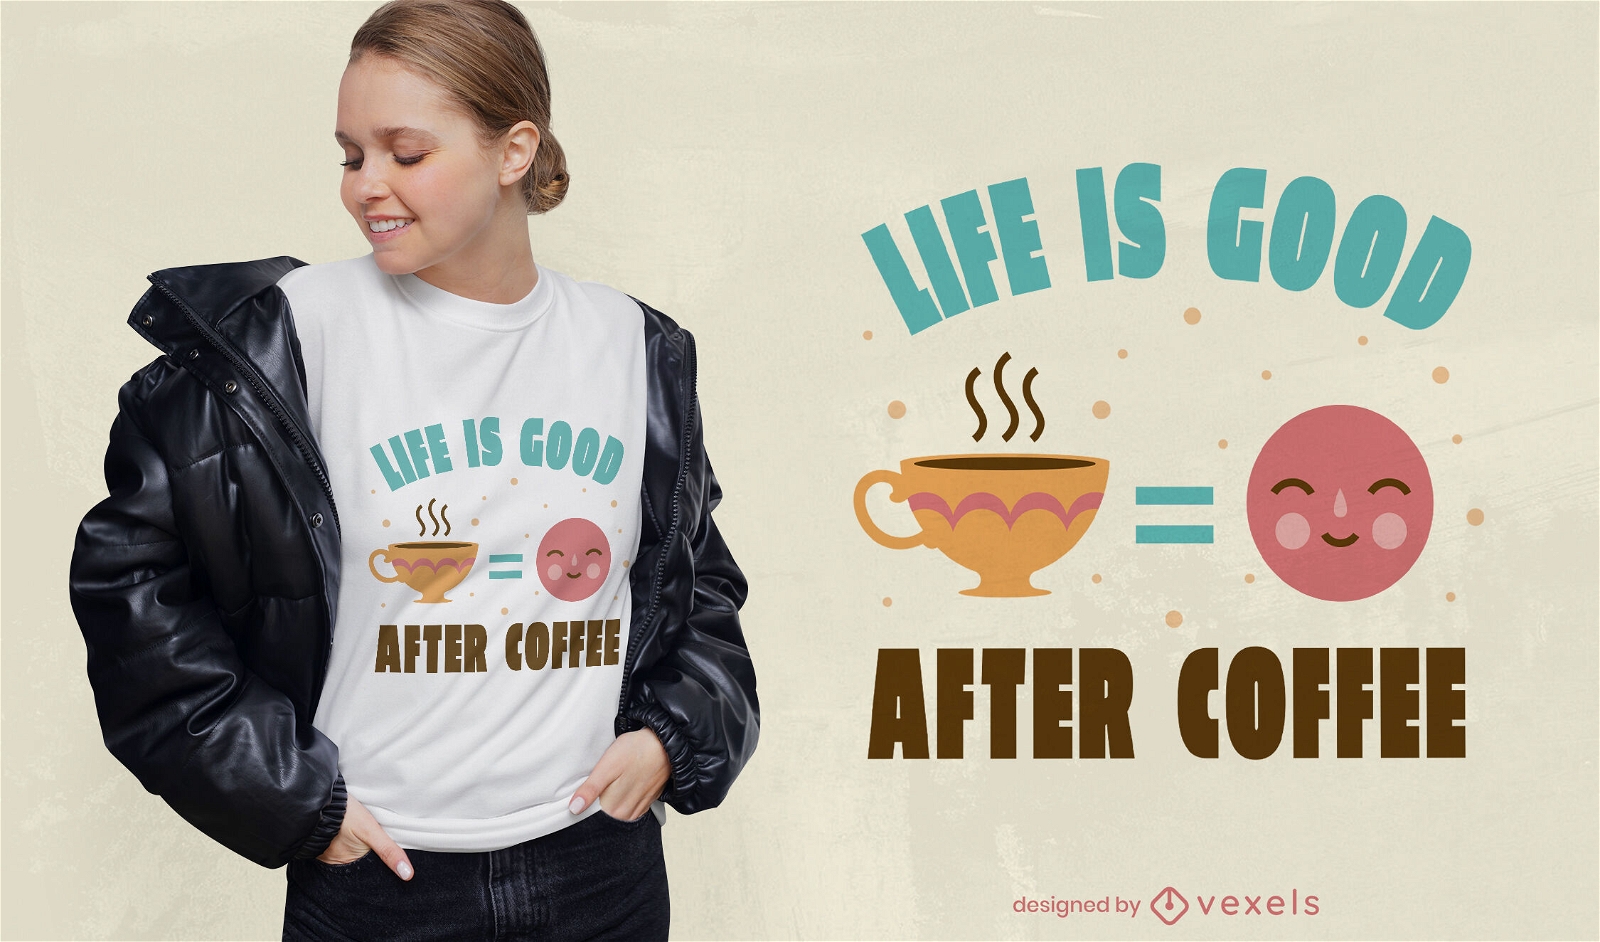 La vida es buena despu?s del dise?o de la camiseta del caf?.